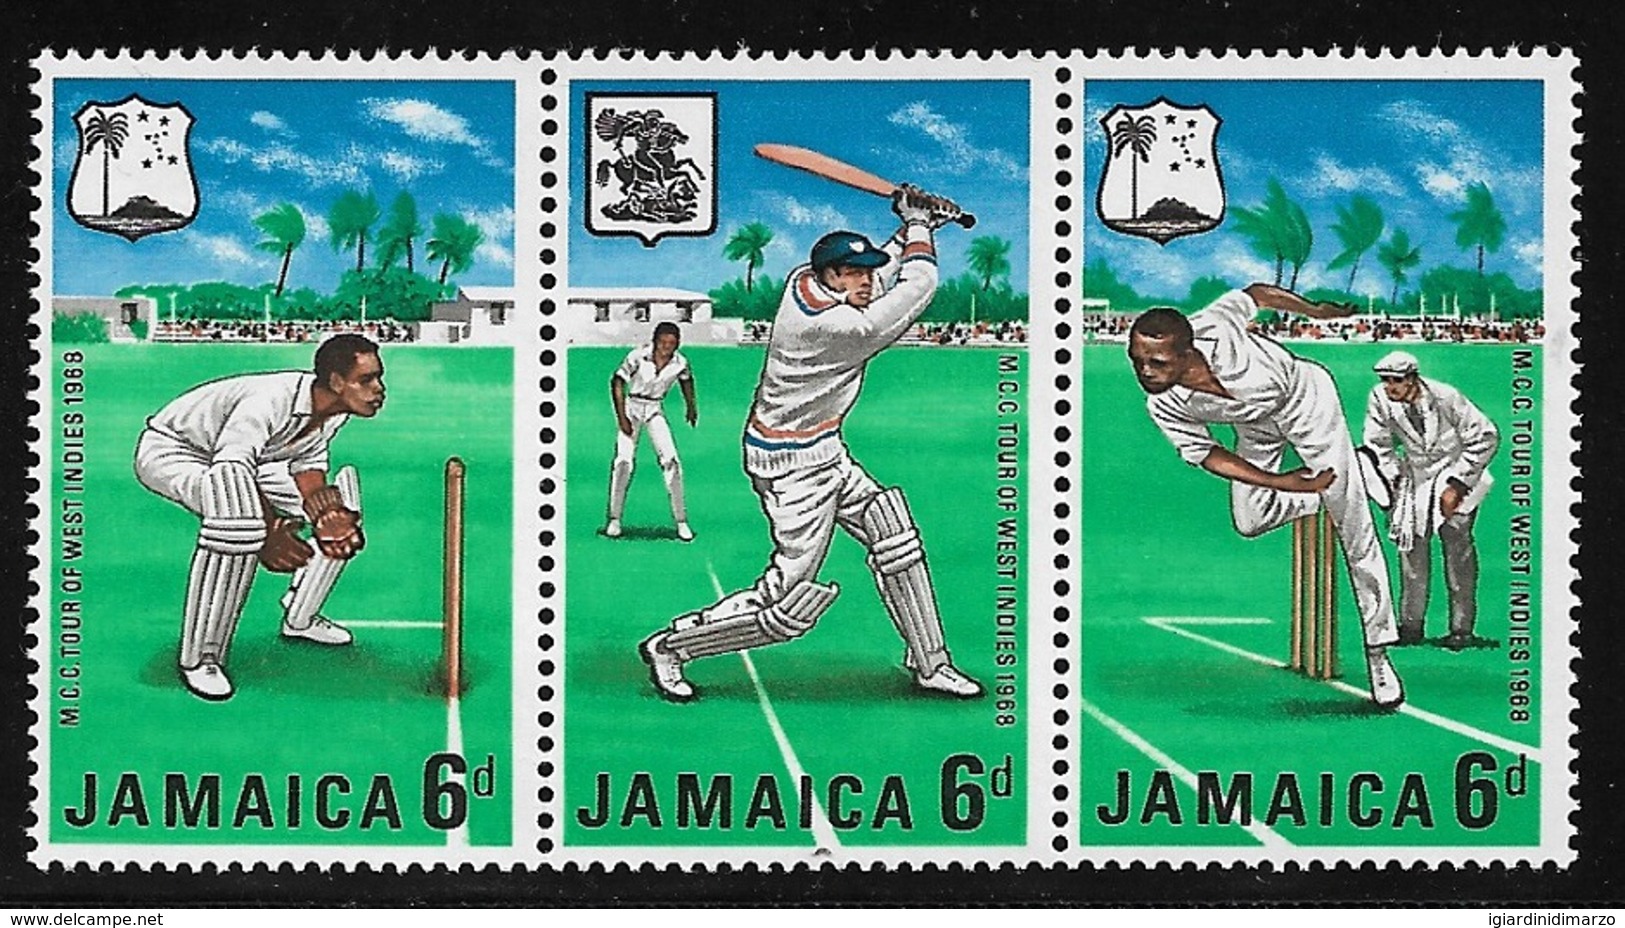 JAMAICA -1968- 3 Valori Nuovi Stl Uniti In Striscia Dedicati Ai CAMPIONATI DI CRICKET DEI CARAIBI- In Ottime Condizioni. - Cricket